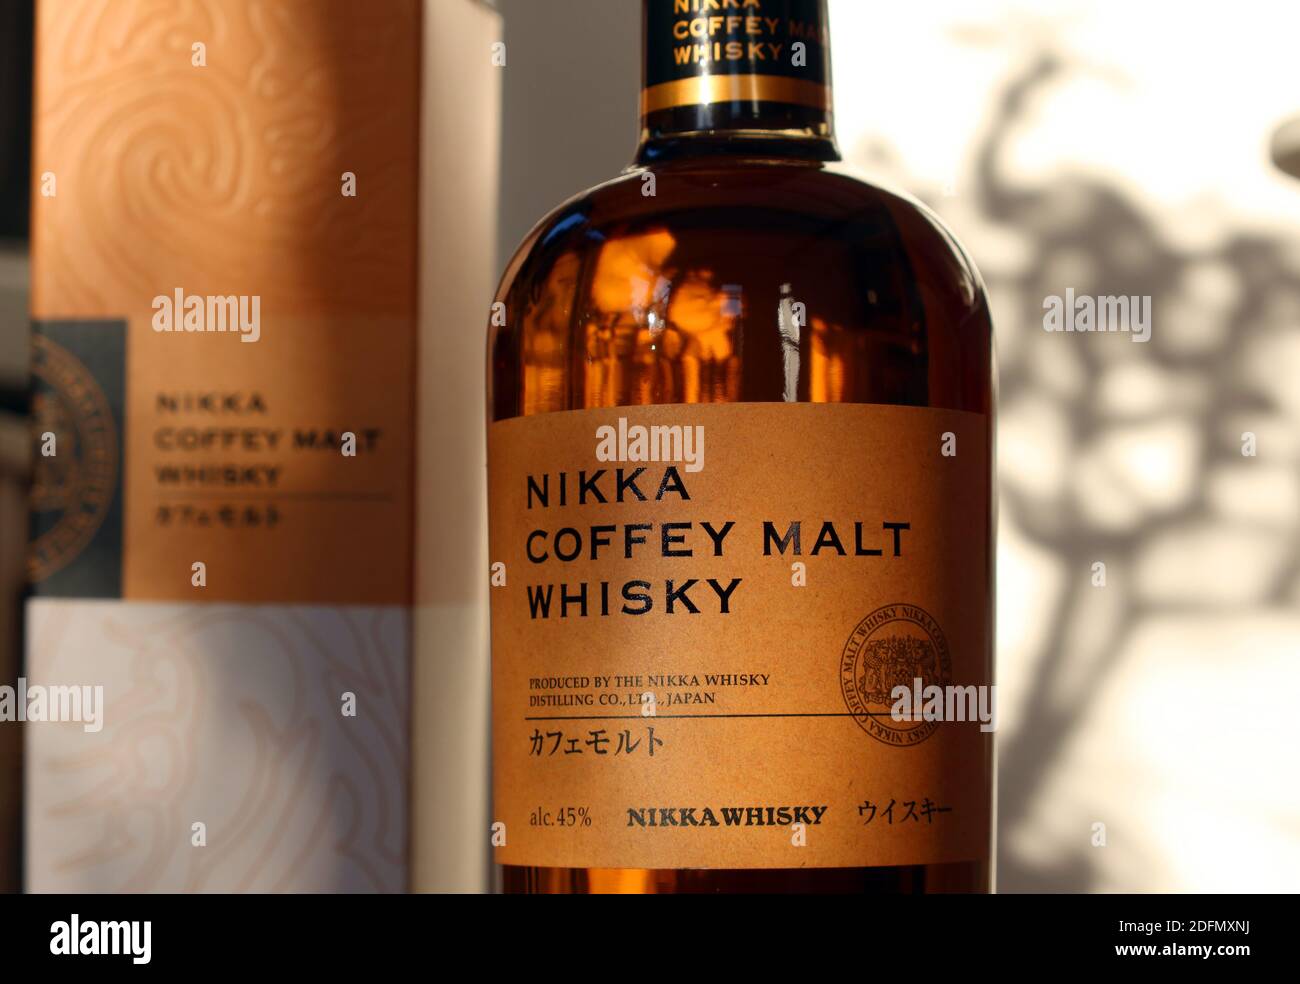 Destilería de whisky Nikka, whisky de Malta Nikka Coffey, whisky japonés Foto de stock